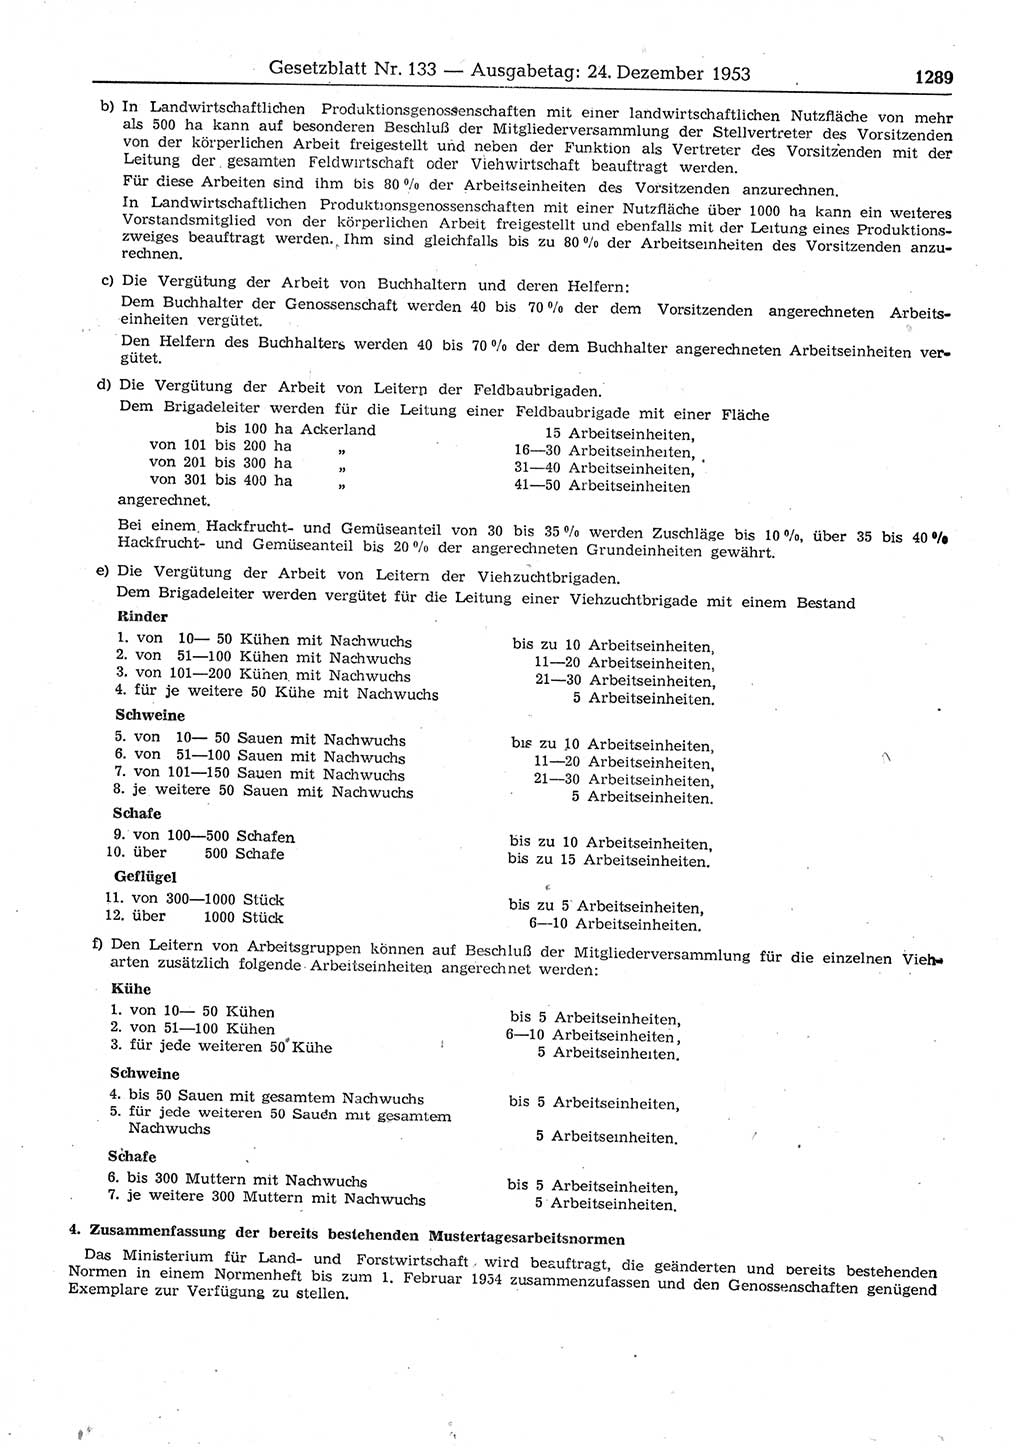 Gesetzblatt (GBl.) der Deutschen Demokratischen Republik (DDR) 1953, Seite 1289 (GBl. DDR 1953, S. 1289)